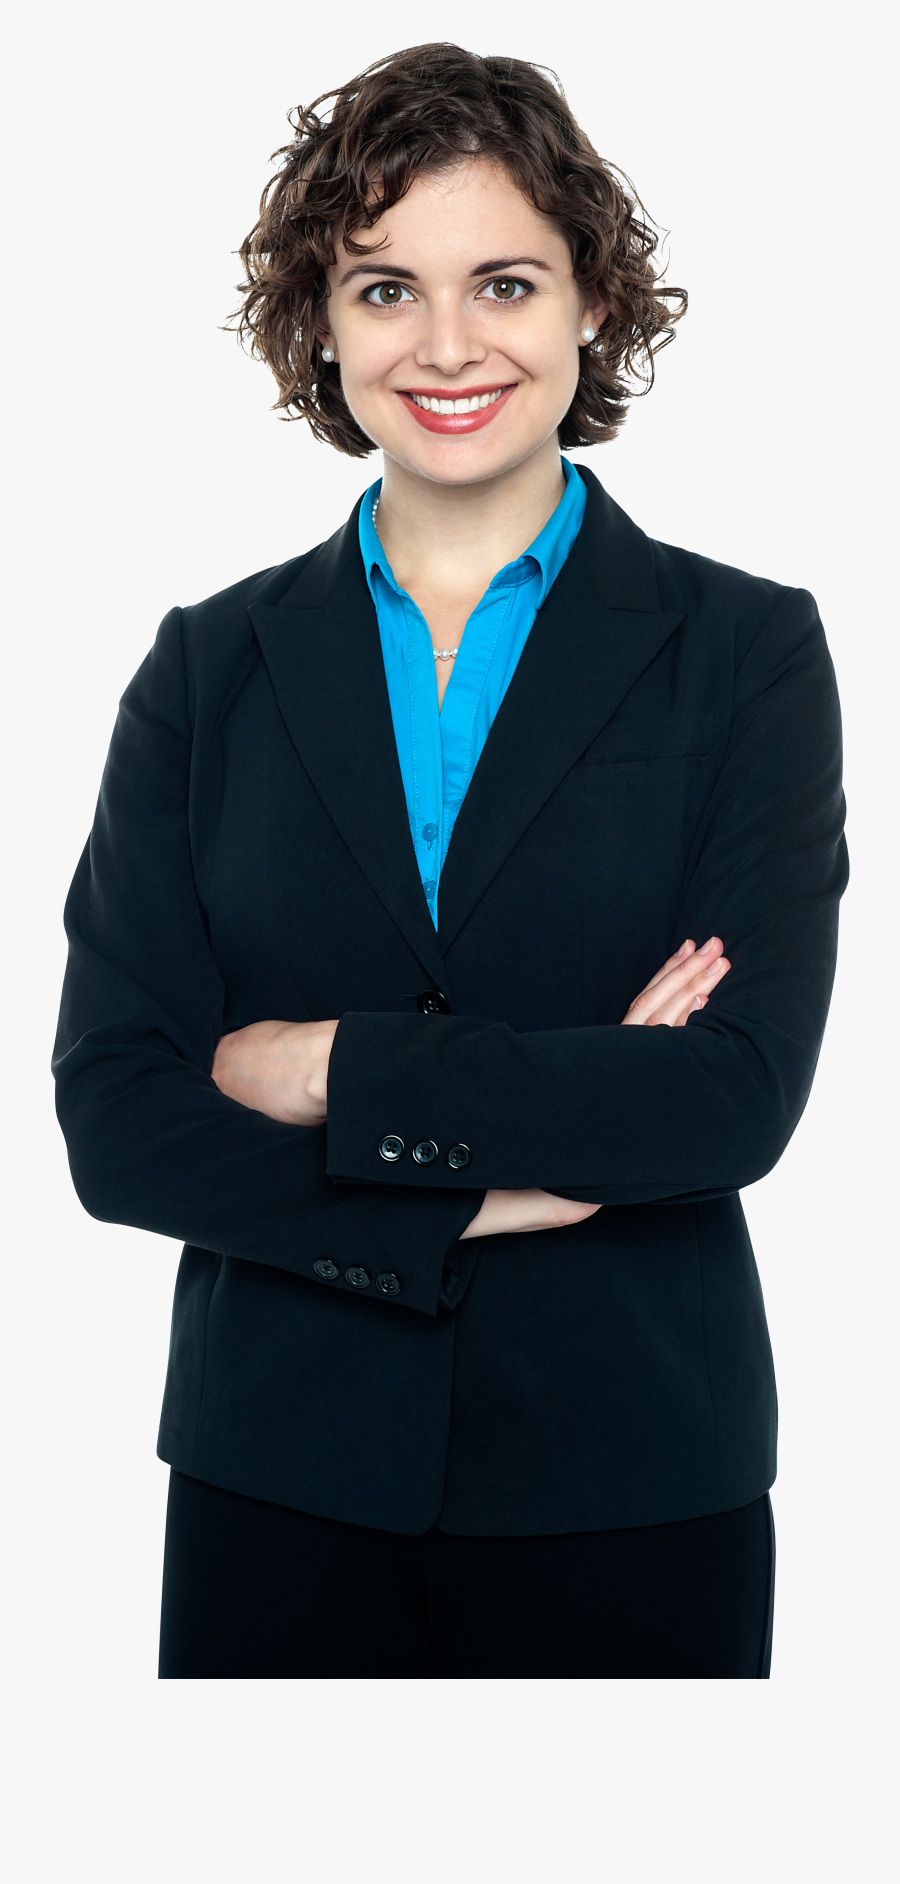 Transparent Business Suit Clipart - Business Women Png, Transparent Clipart